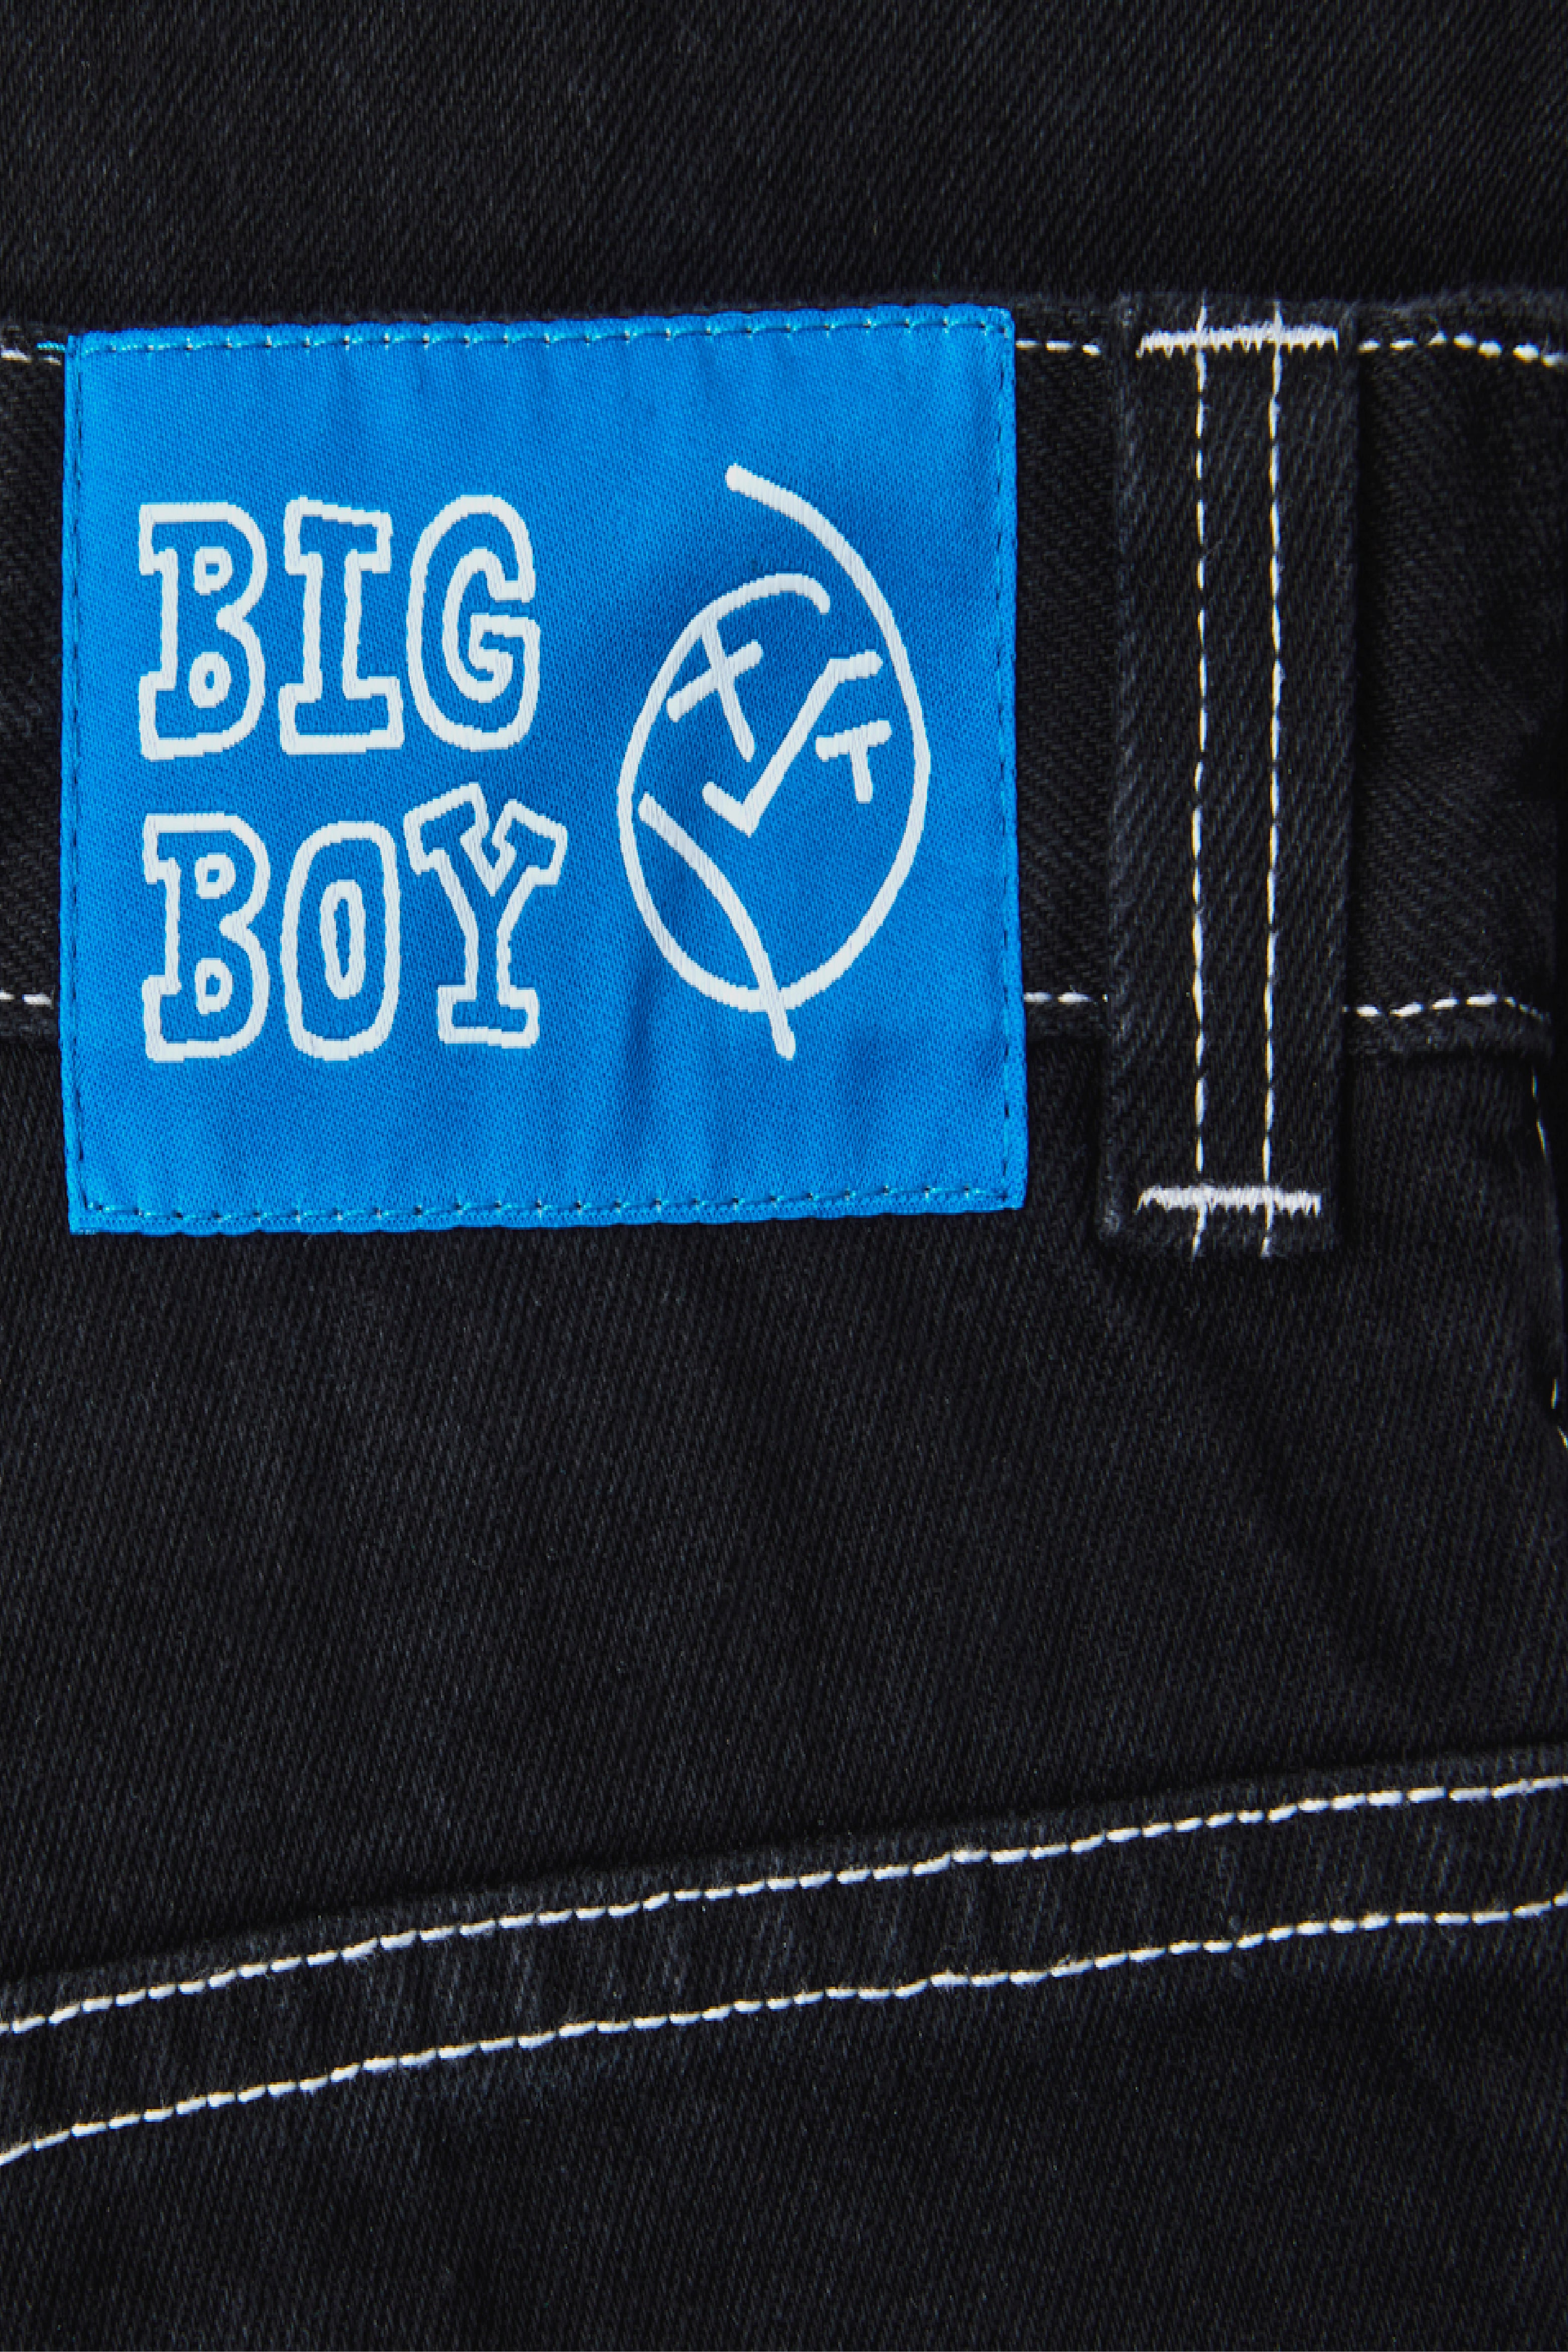 Selectshop FRAME - POLAR SKATE CO. Big Boy Jeans Bottoms Dubai